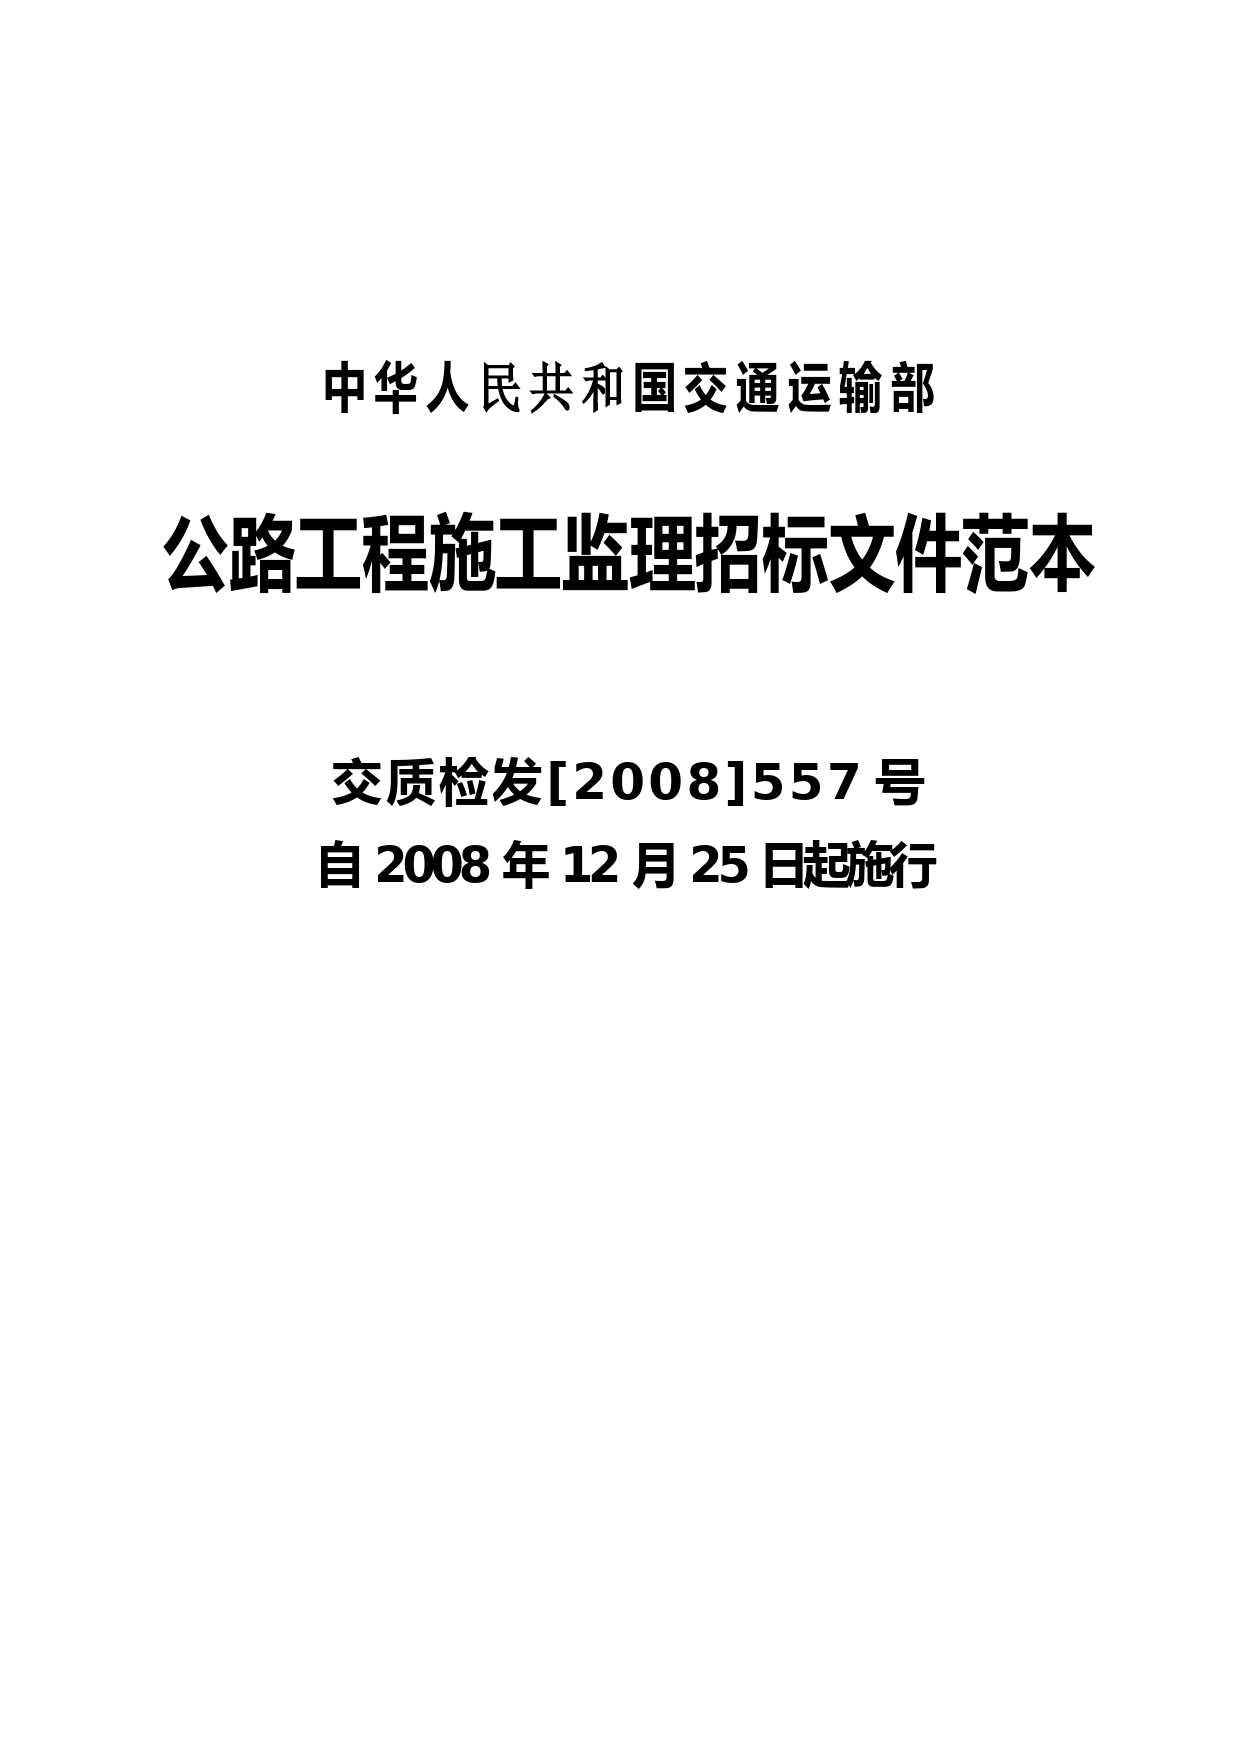 中华人民共和国交通运输部公路工程施工监理招标文件范本(正式发布版)